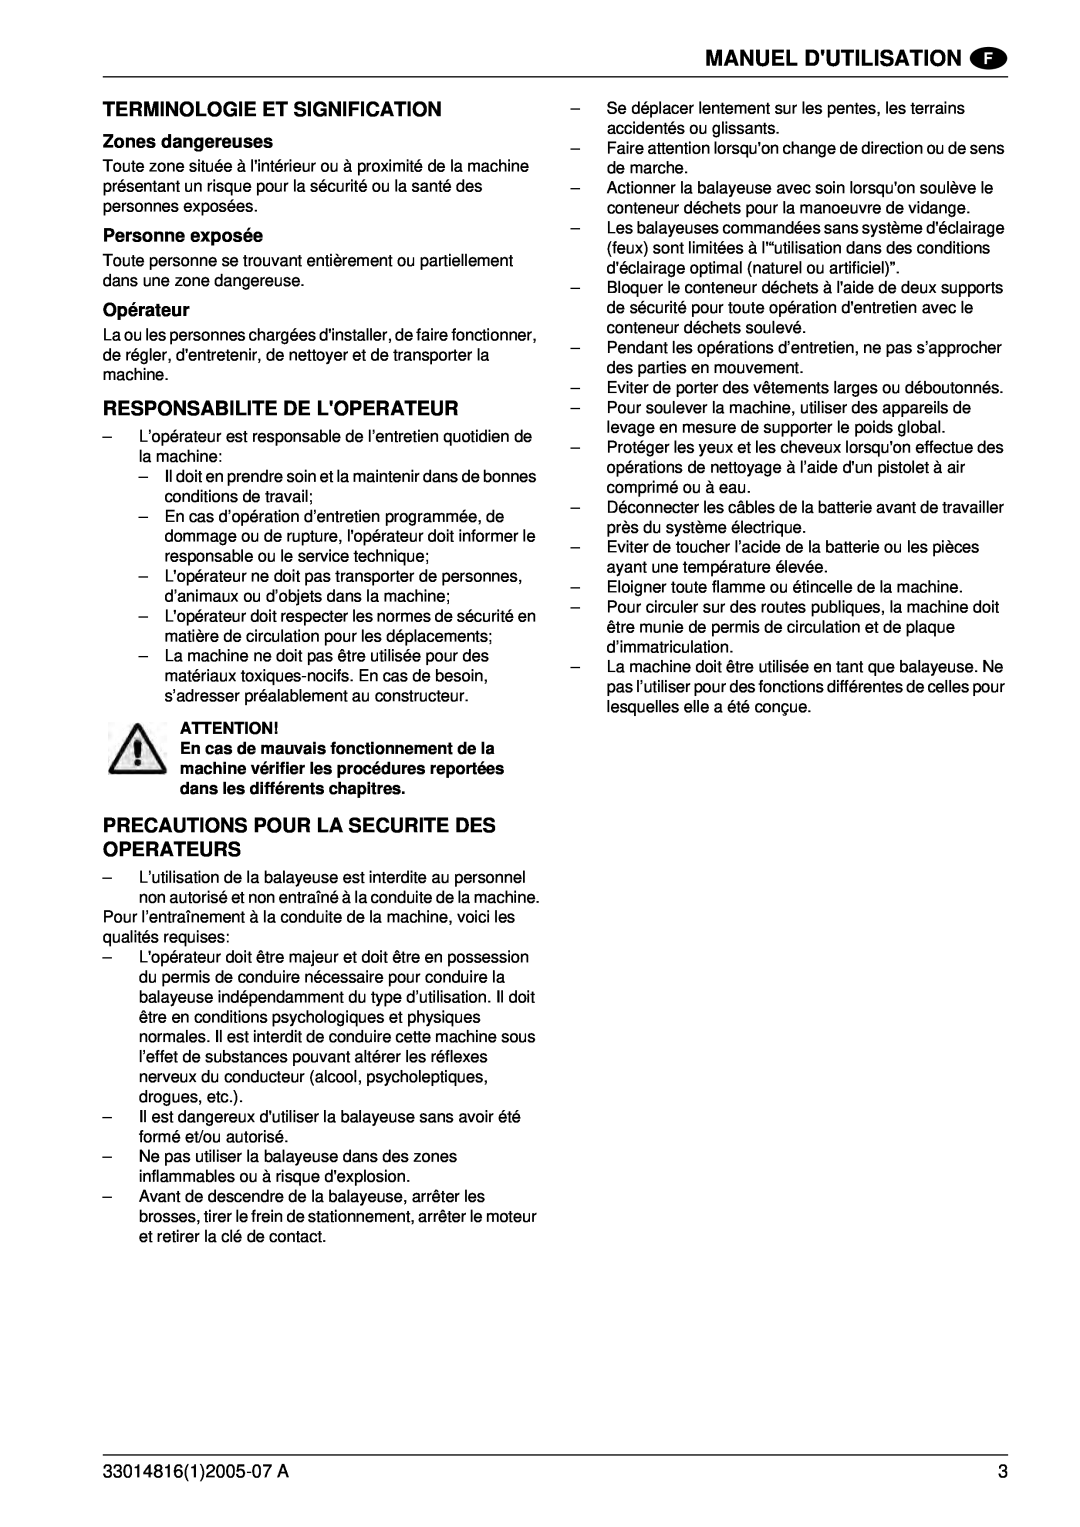 Nilfisk-ALTO SR 1700 2WD B Terminologie Et Signification, Responsabilite De Loperateur, Manuel Dutilisation, Opérateur 